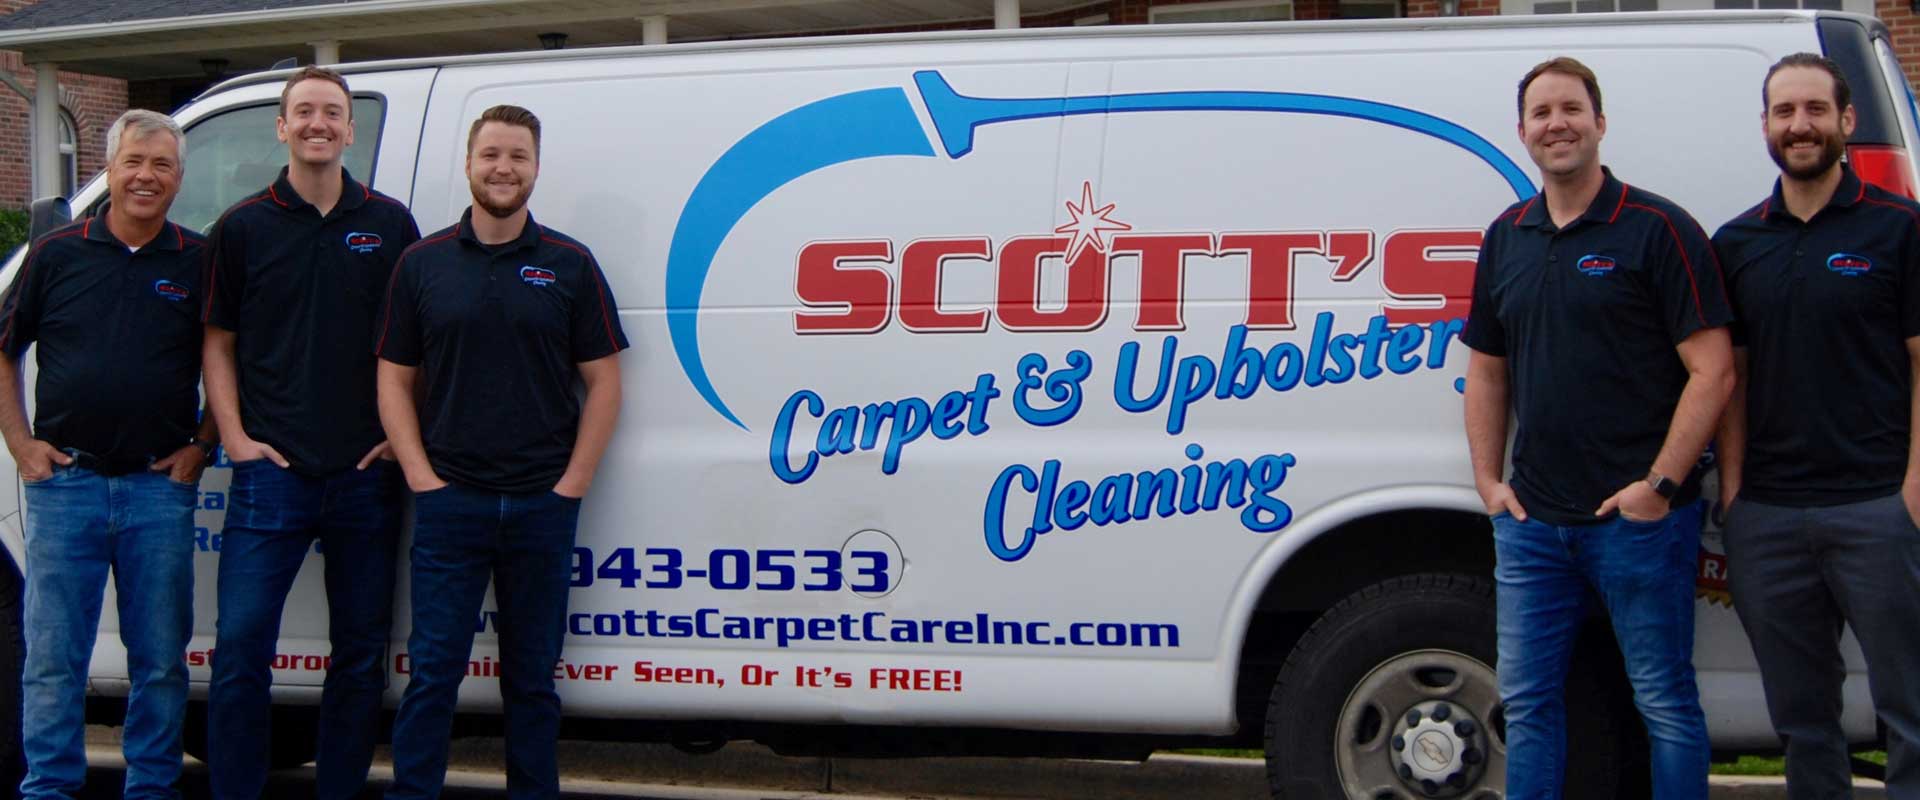 Scott's Carpet & Upholstery Cleaning